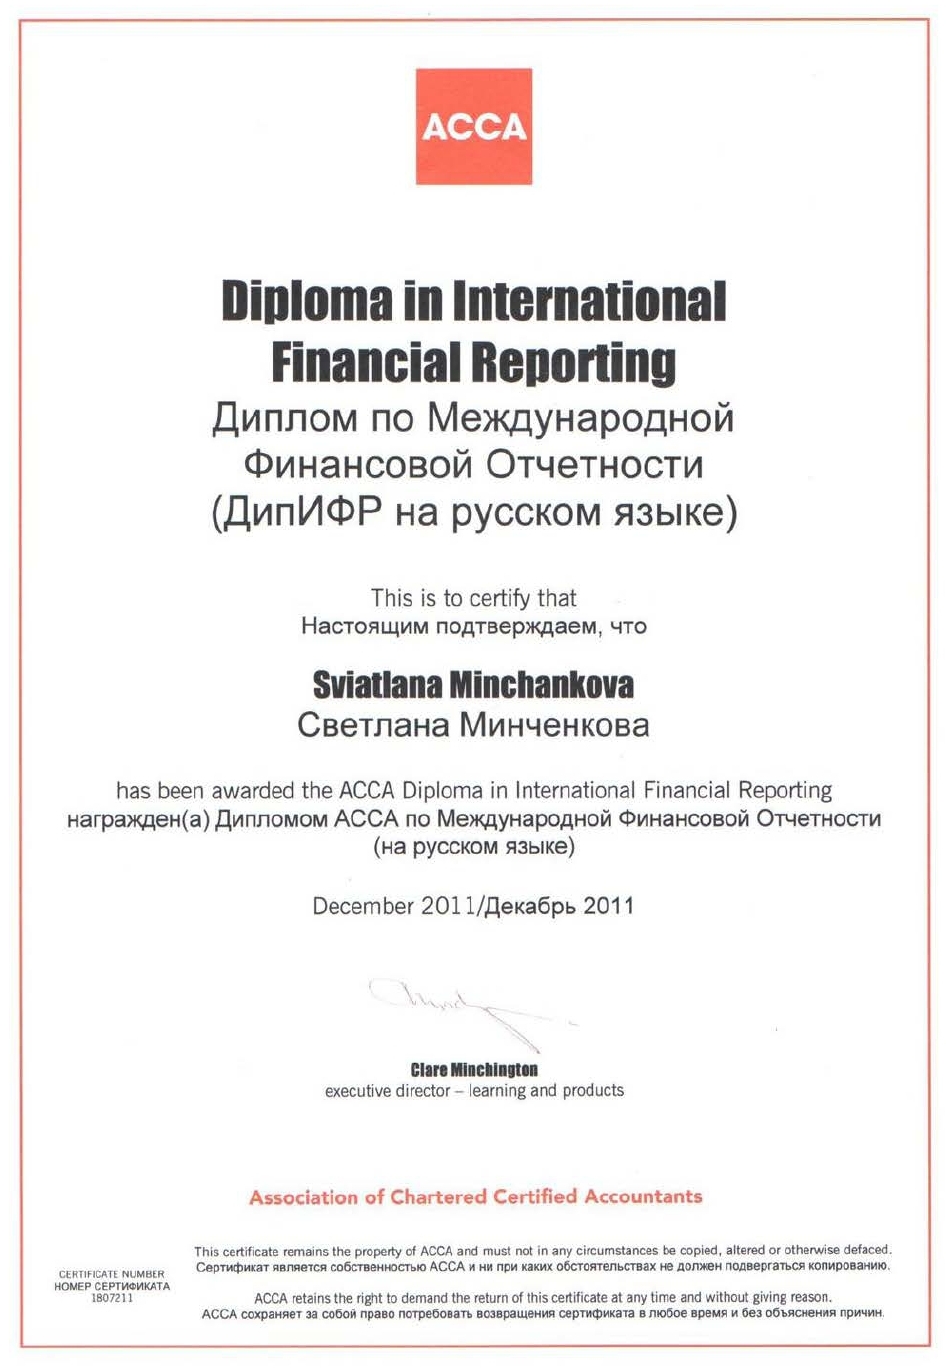 Диплом по Международной Финансовой Отчетности Светланы Минченковой.